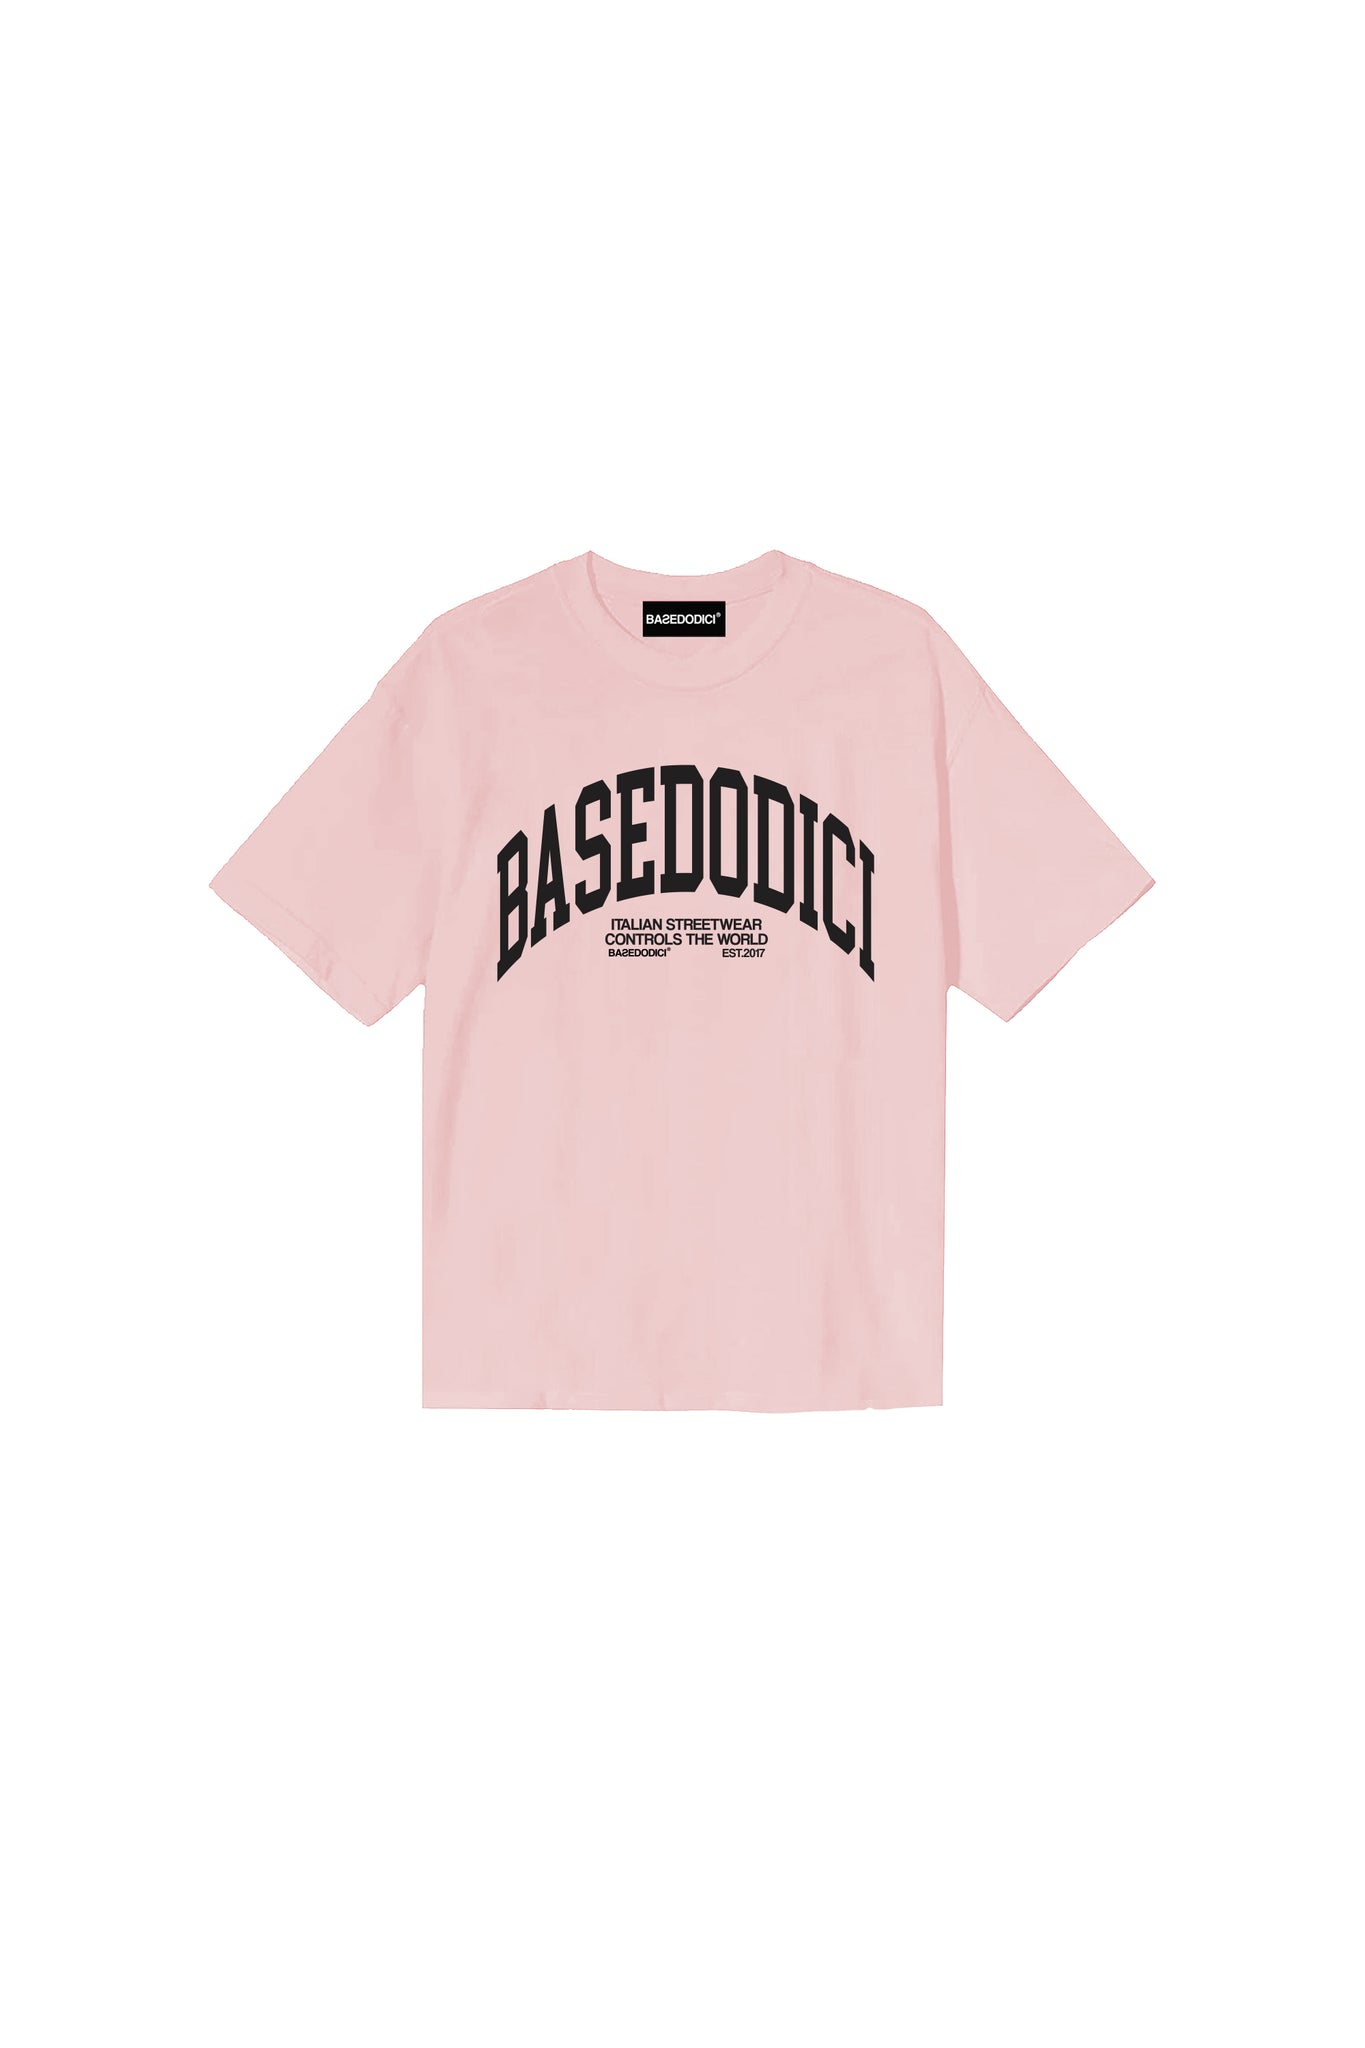 “FORSUMMER” ArcLogo Pink T-Shirt